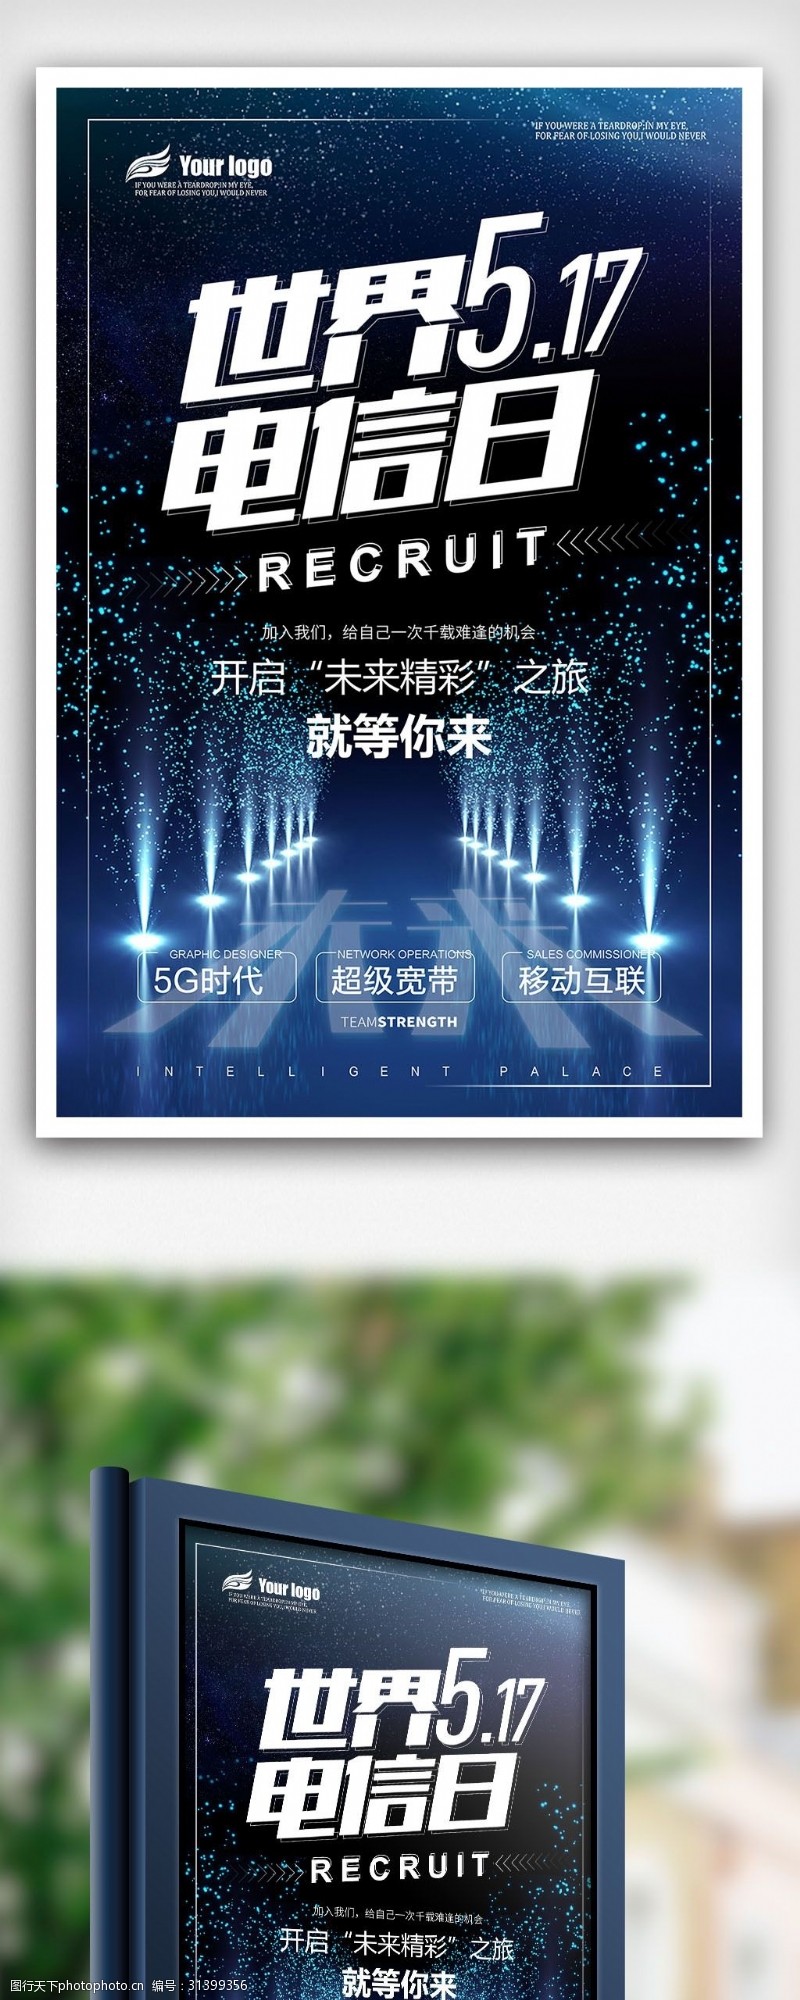 2018年创意酷炫世界电信日宣传海报设计PSD格式